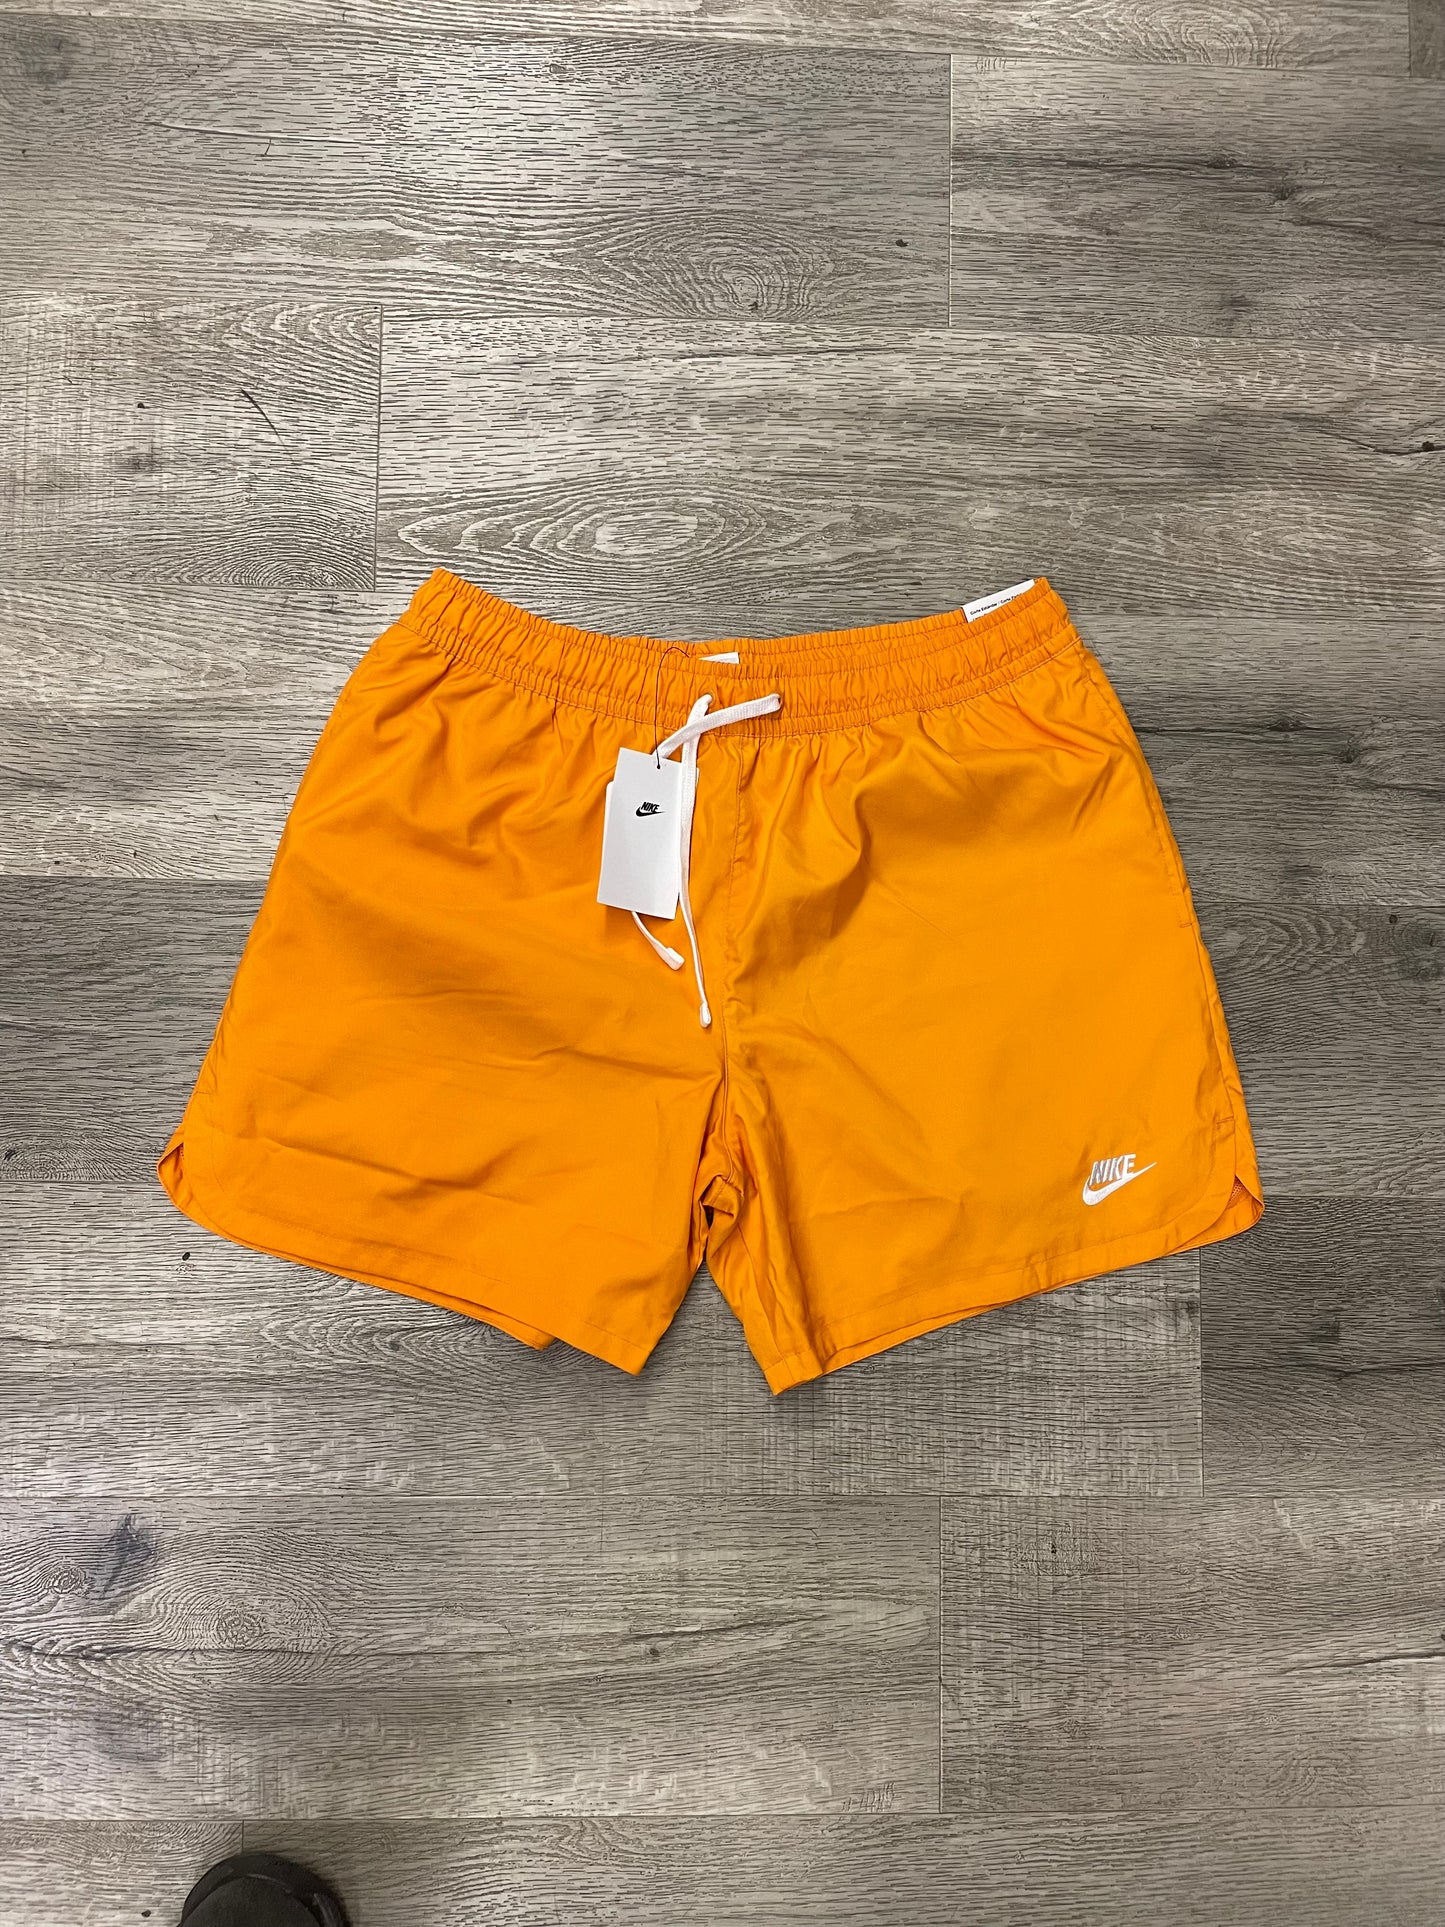 Nike Orange Shorts